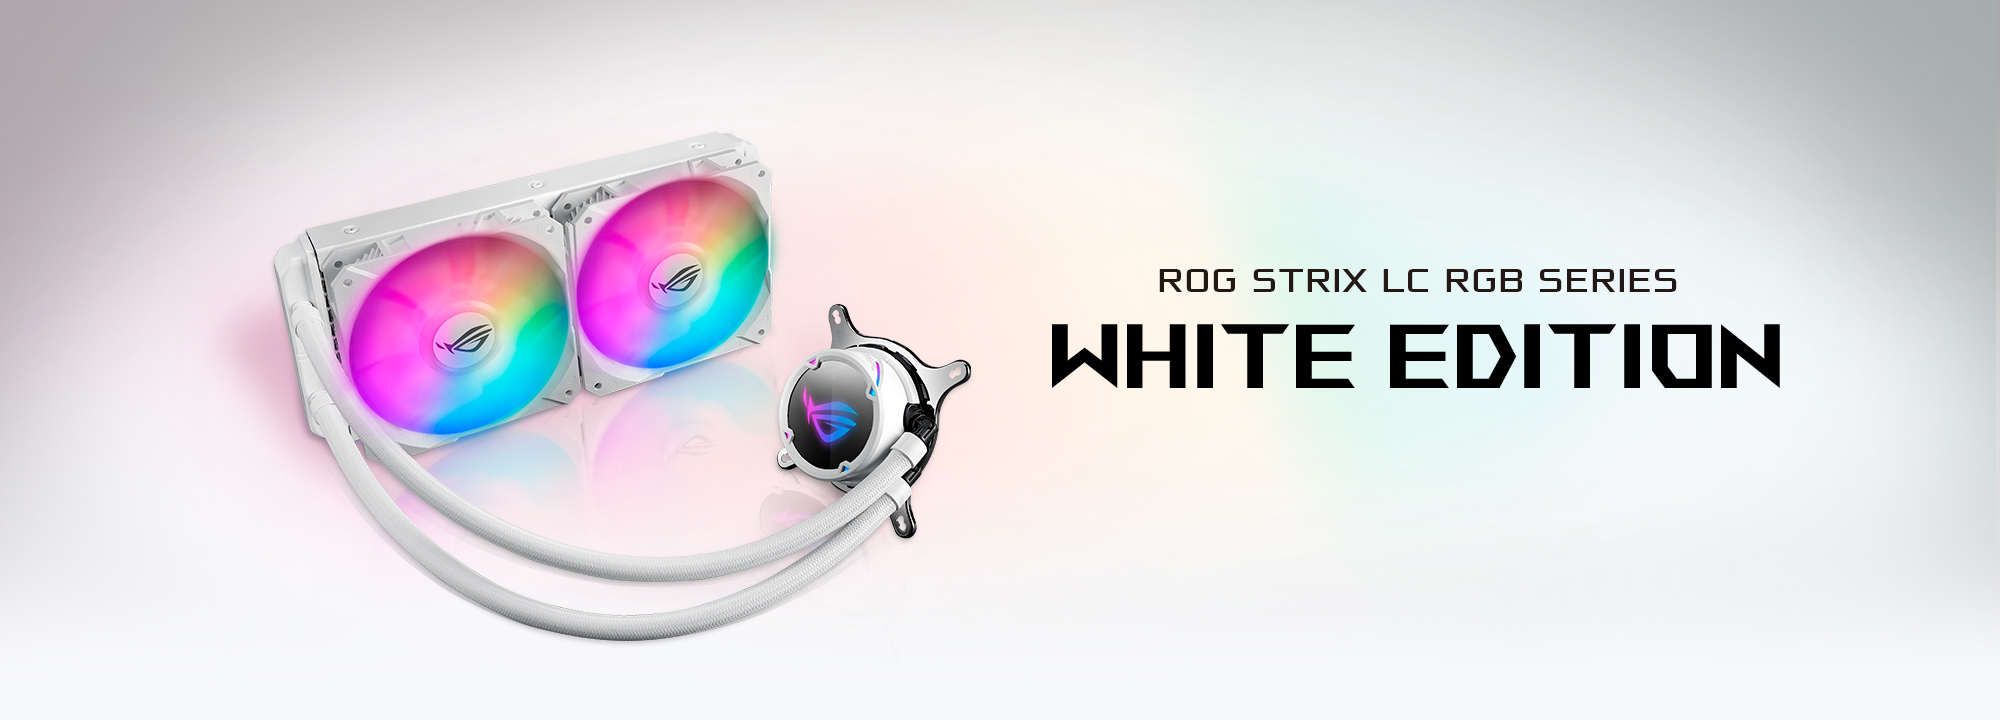 ROG Strix LC 240 RGB White Edition